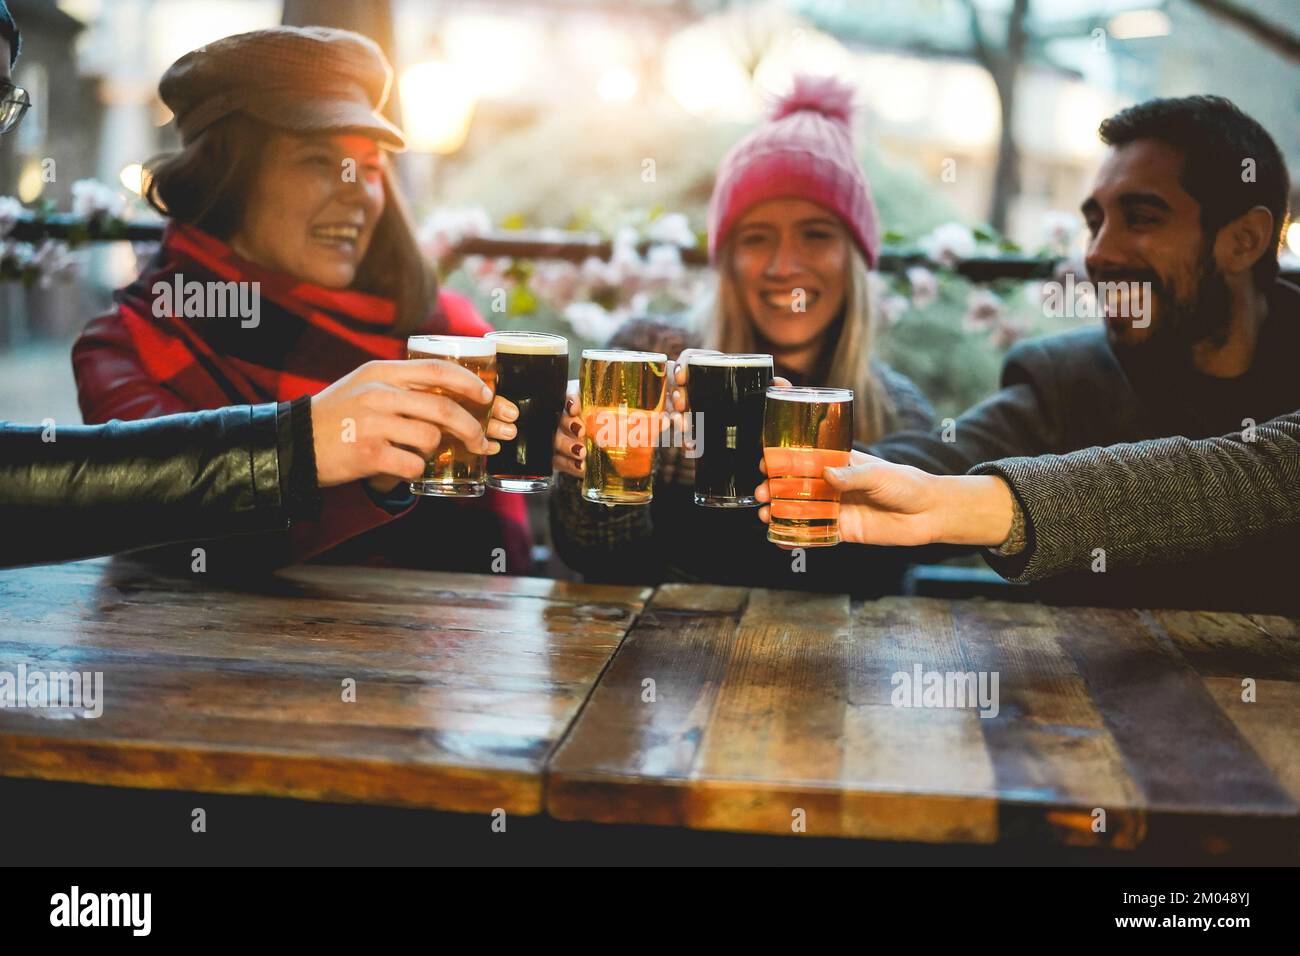 Junge Leute jubeln mit Bier im Pub-Restaurant – weicher Fokus auf die rechte Hand, die Glas hält Stockfoto